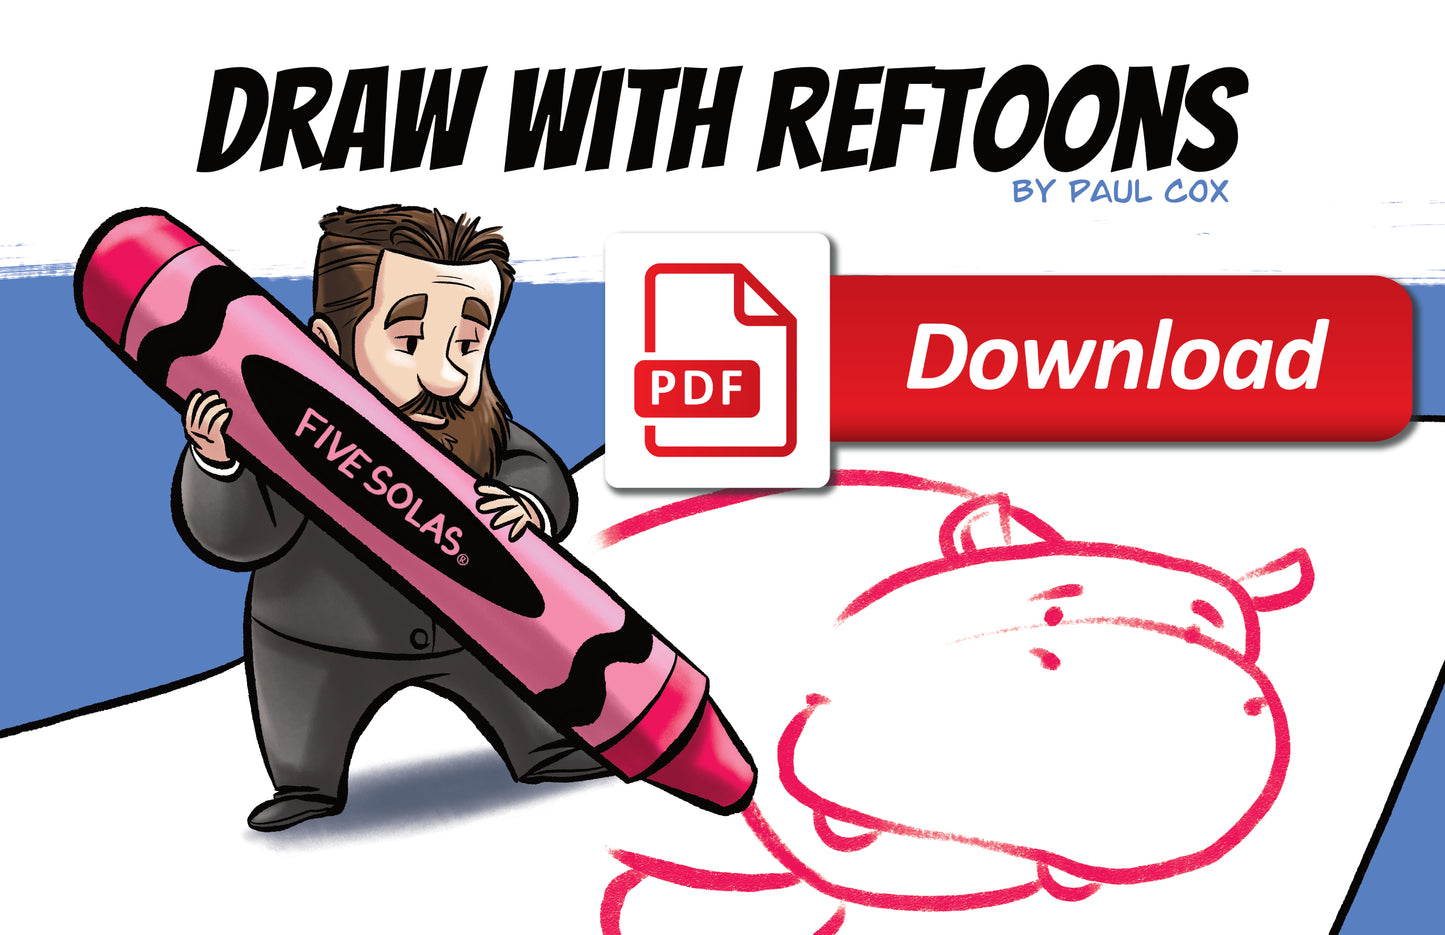 Draw With RefToons PDF